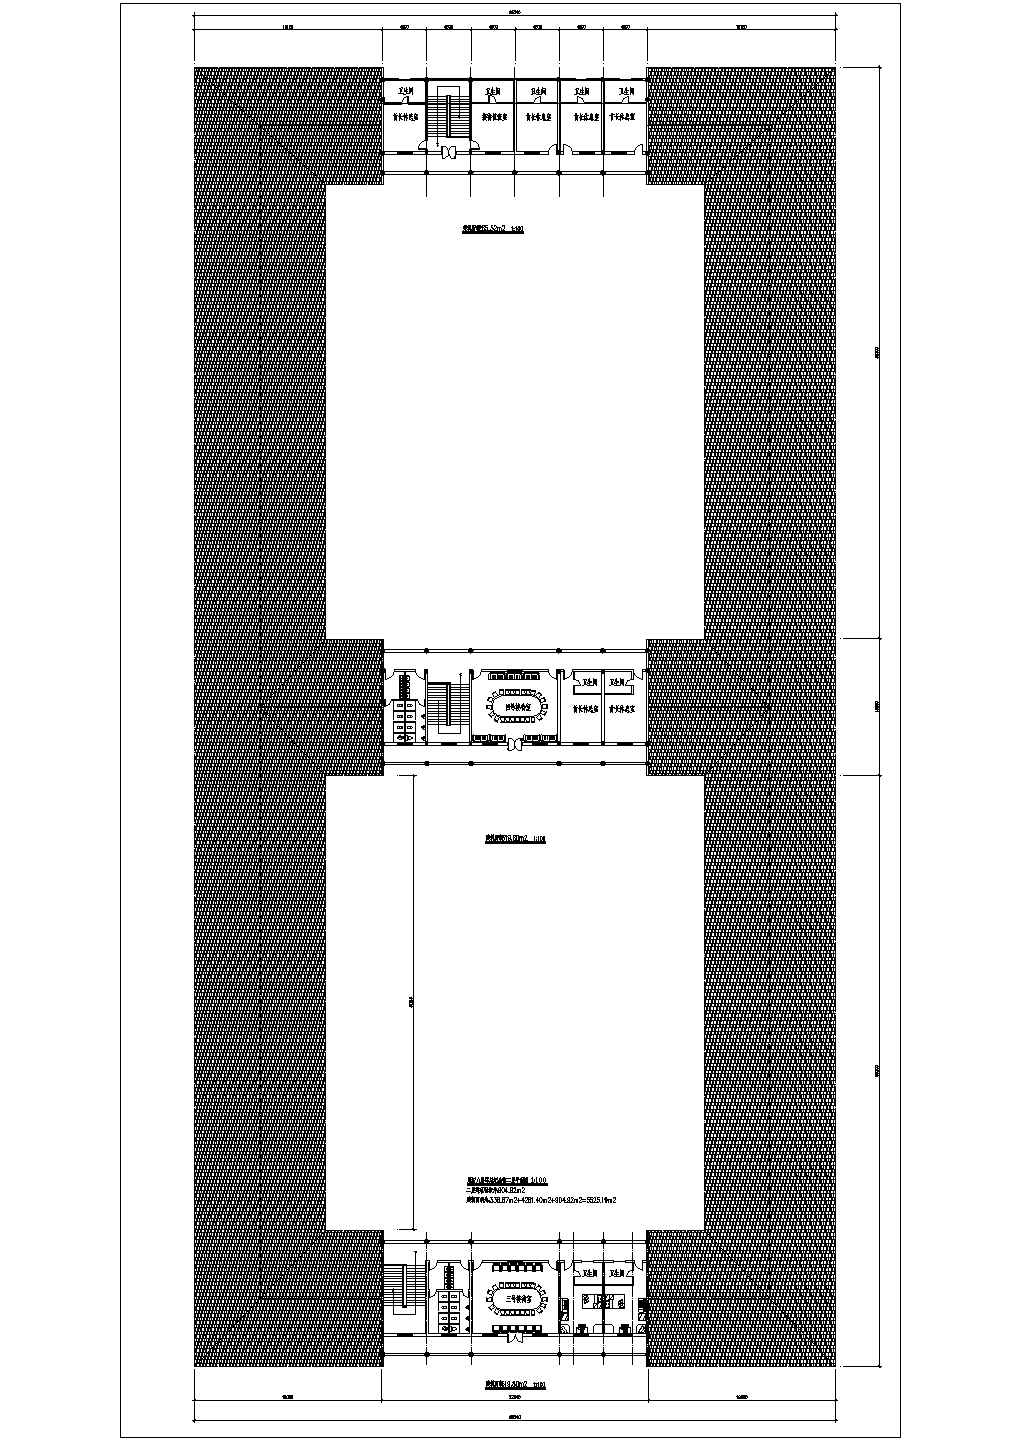 【盐城市】某地区纪念馆建筑设计图纸